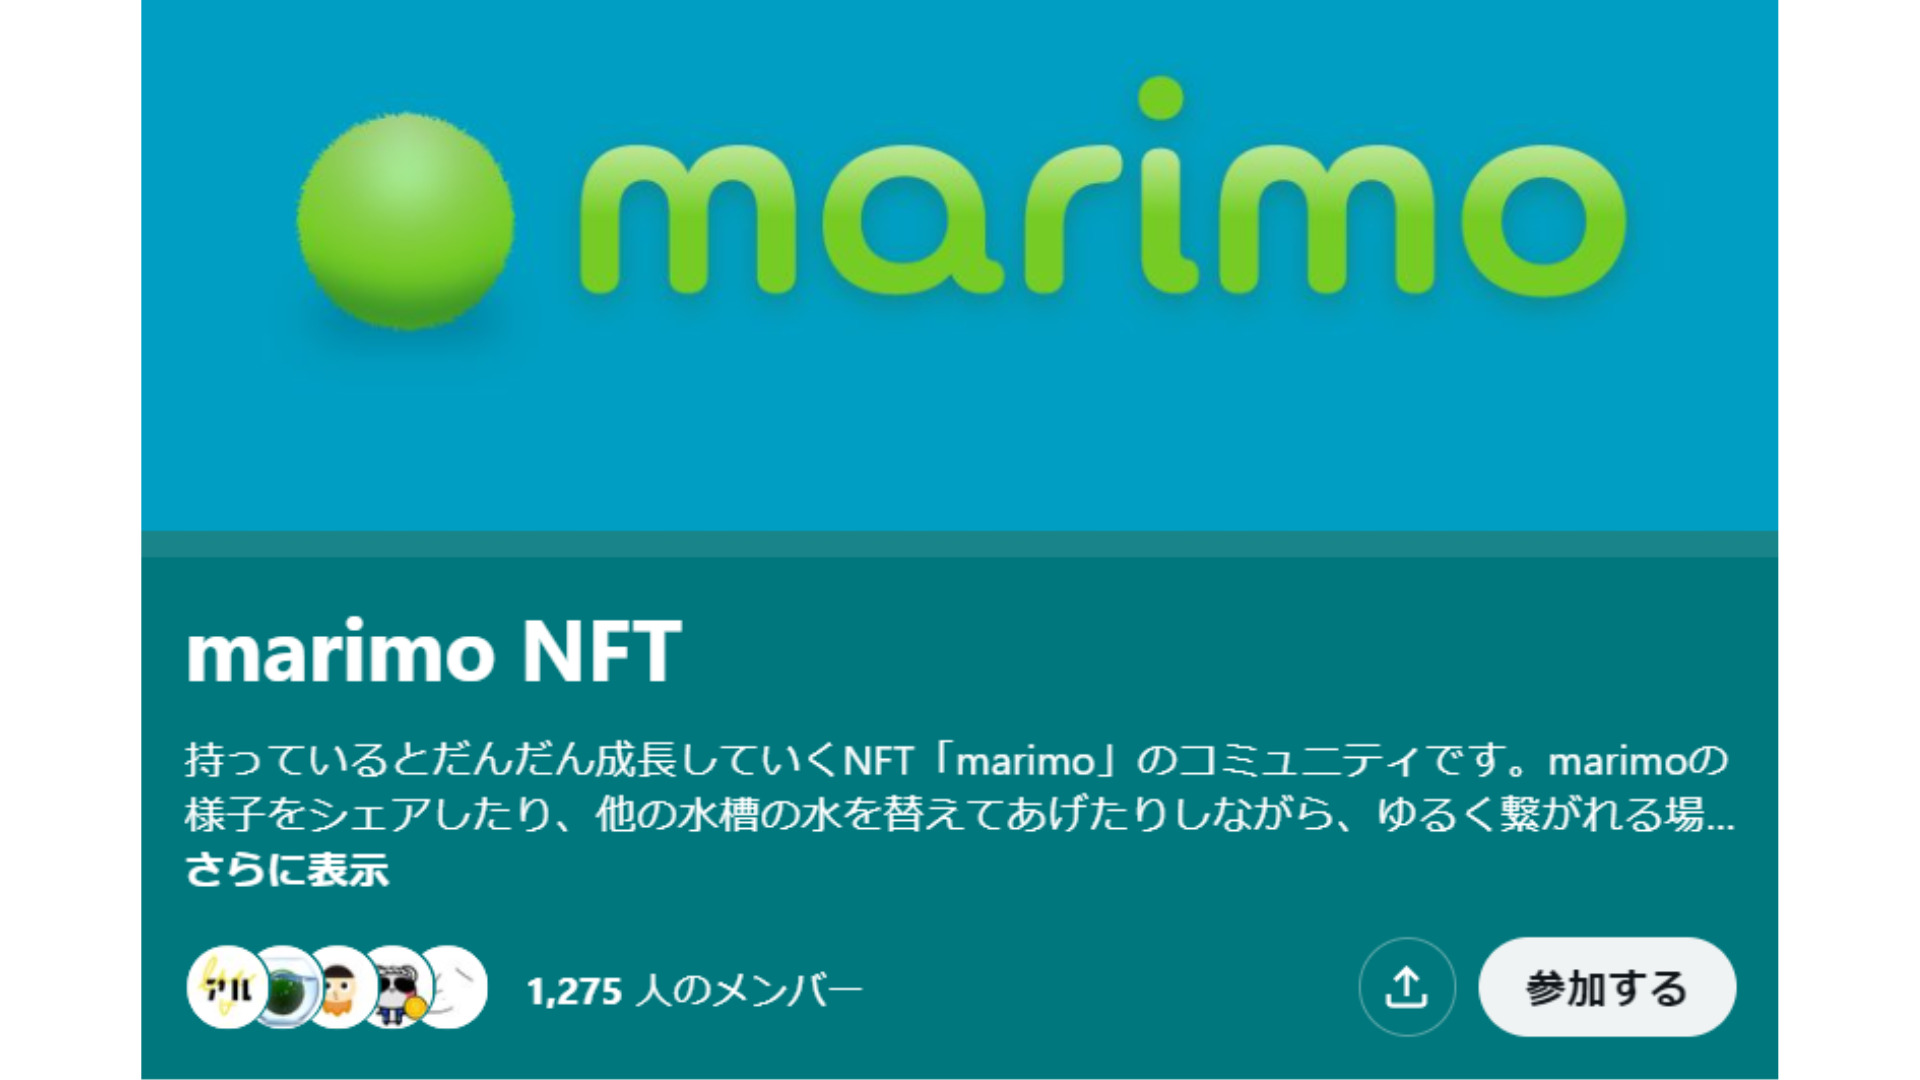 NFT marimoのツイッターコミュニティ